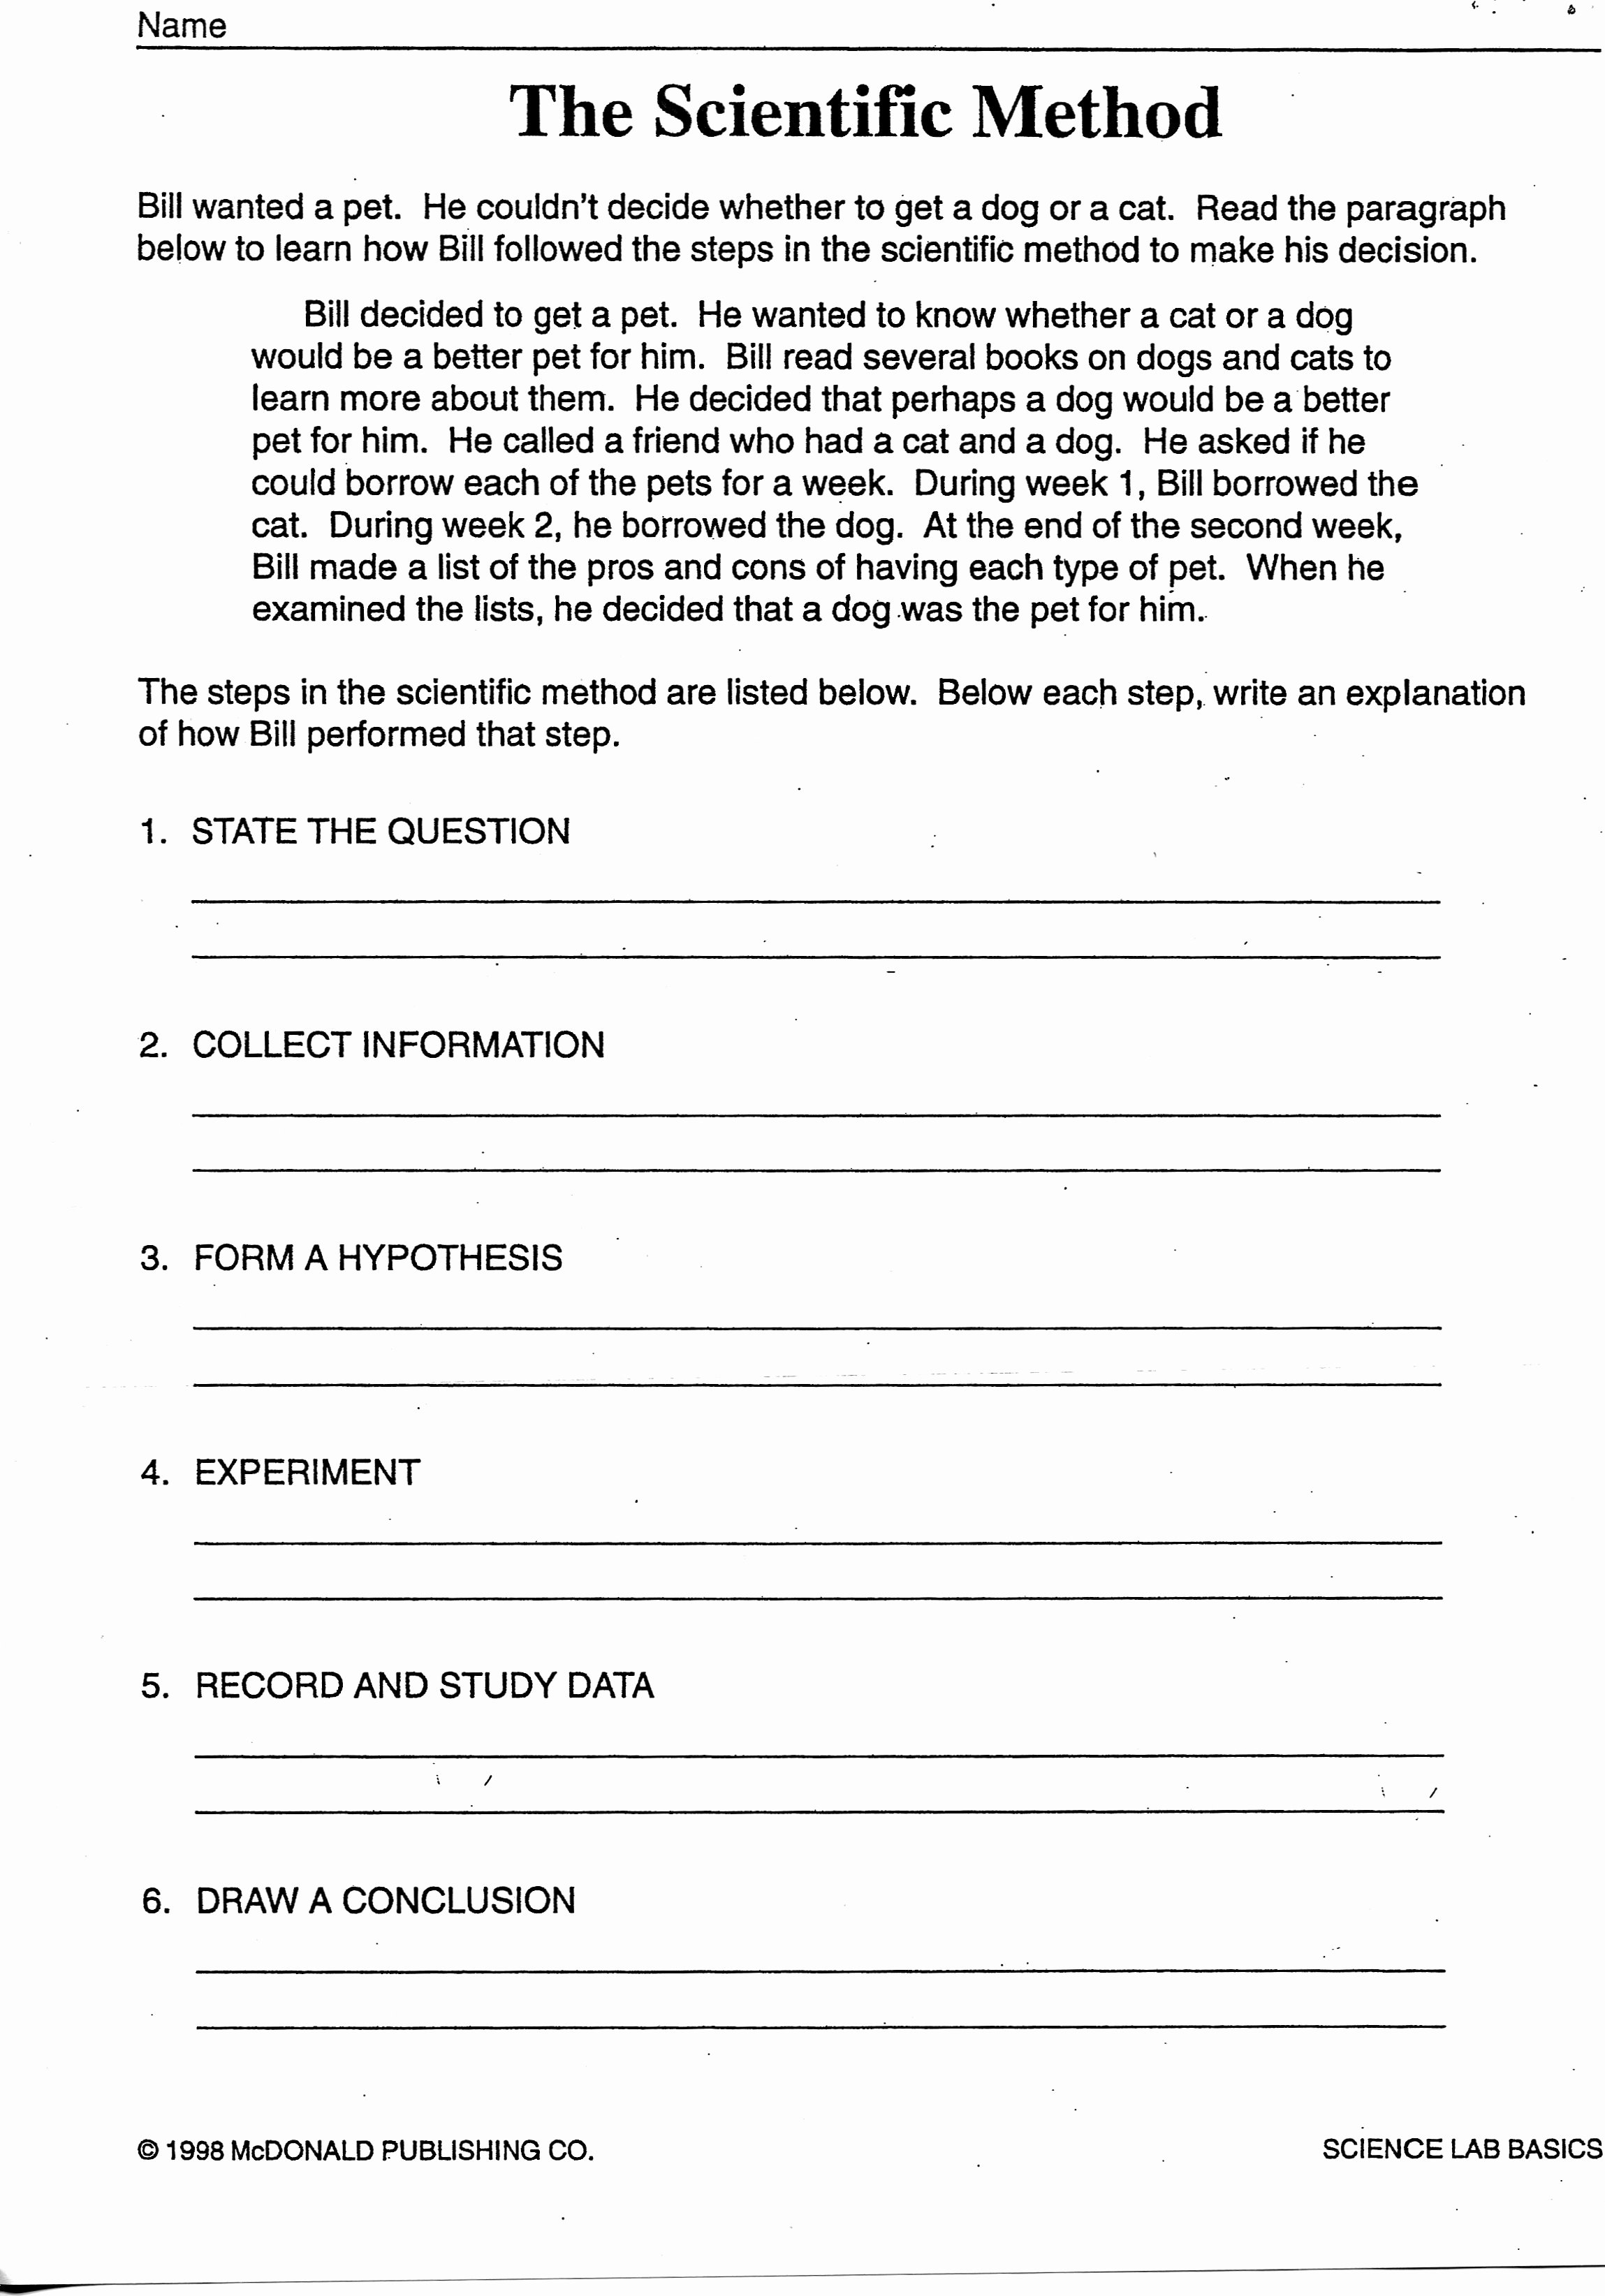 Scientific Method Worksheet 4th Grade Luxury 11 Best Of Scientific Method Worksheets for 6th